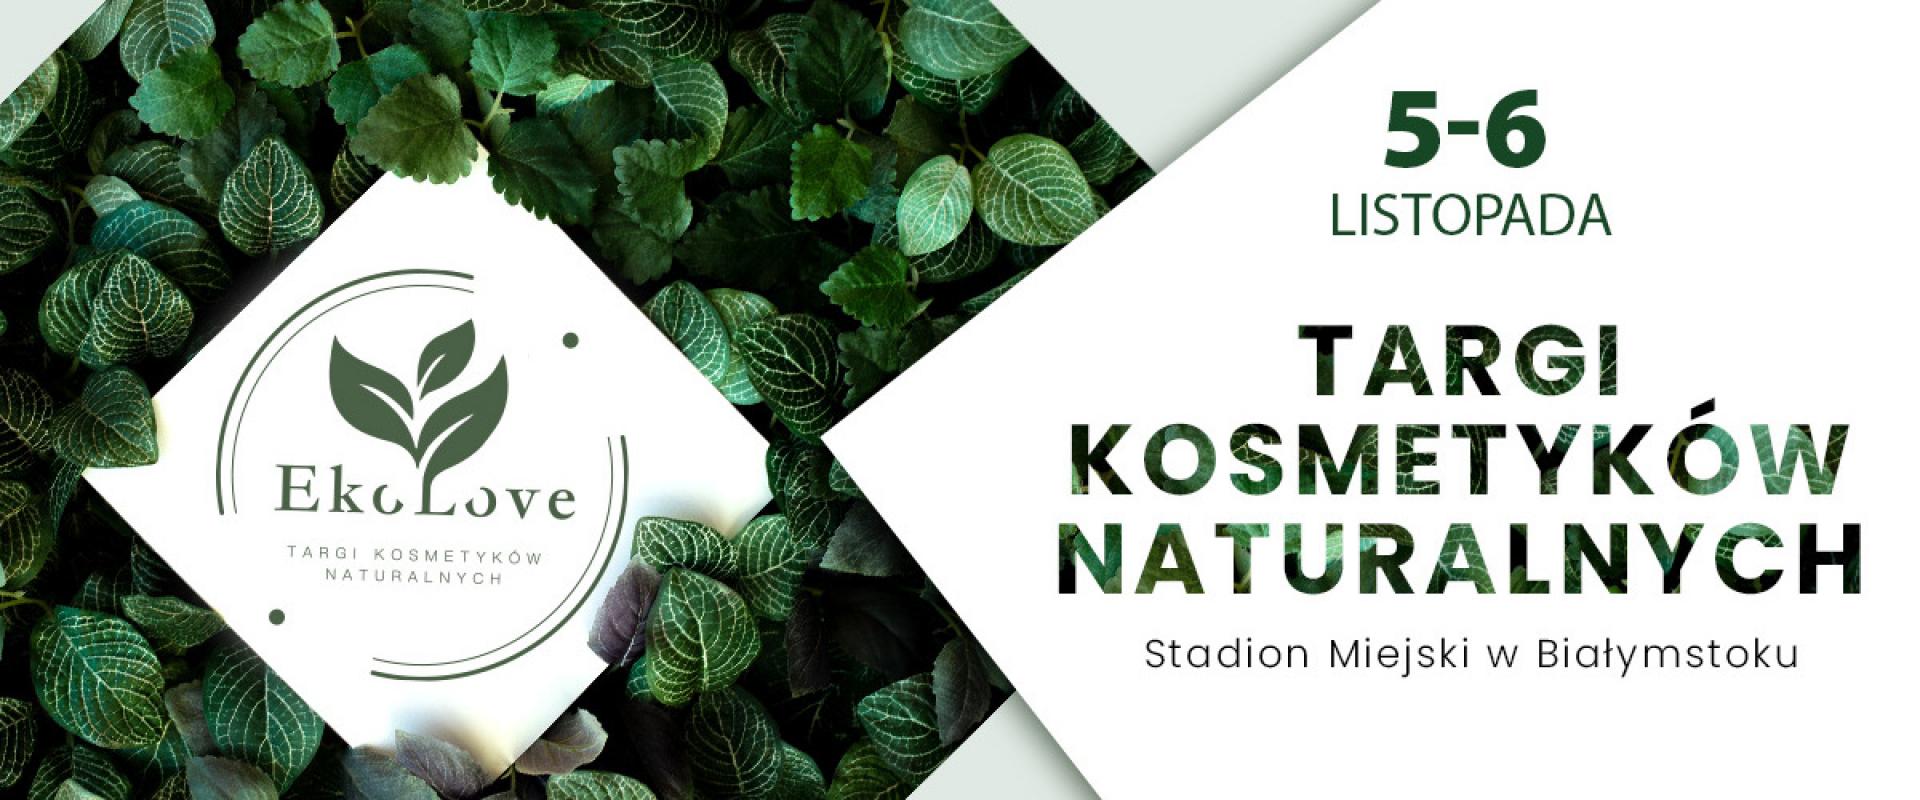 Pierwsze eko-targi na Podlasiu - EkoLove zaprasza wystawców i odwiedzających